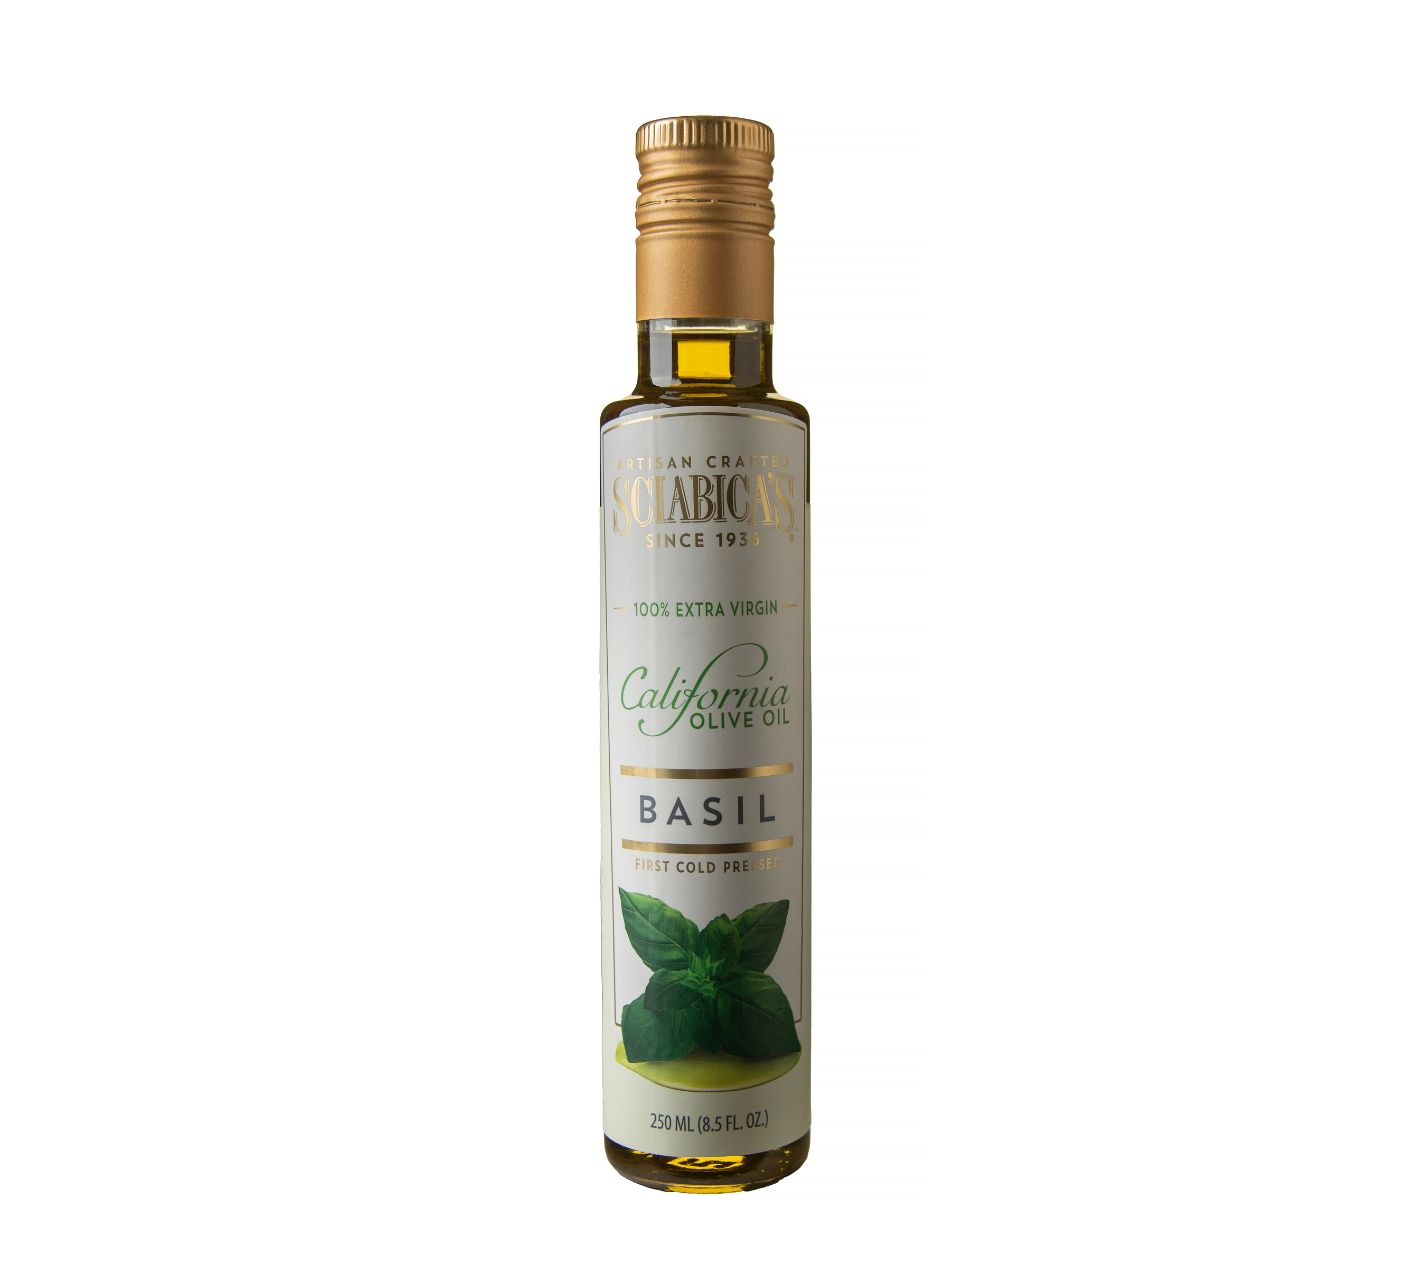 Sciabicas Basil olive oil bottle